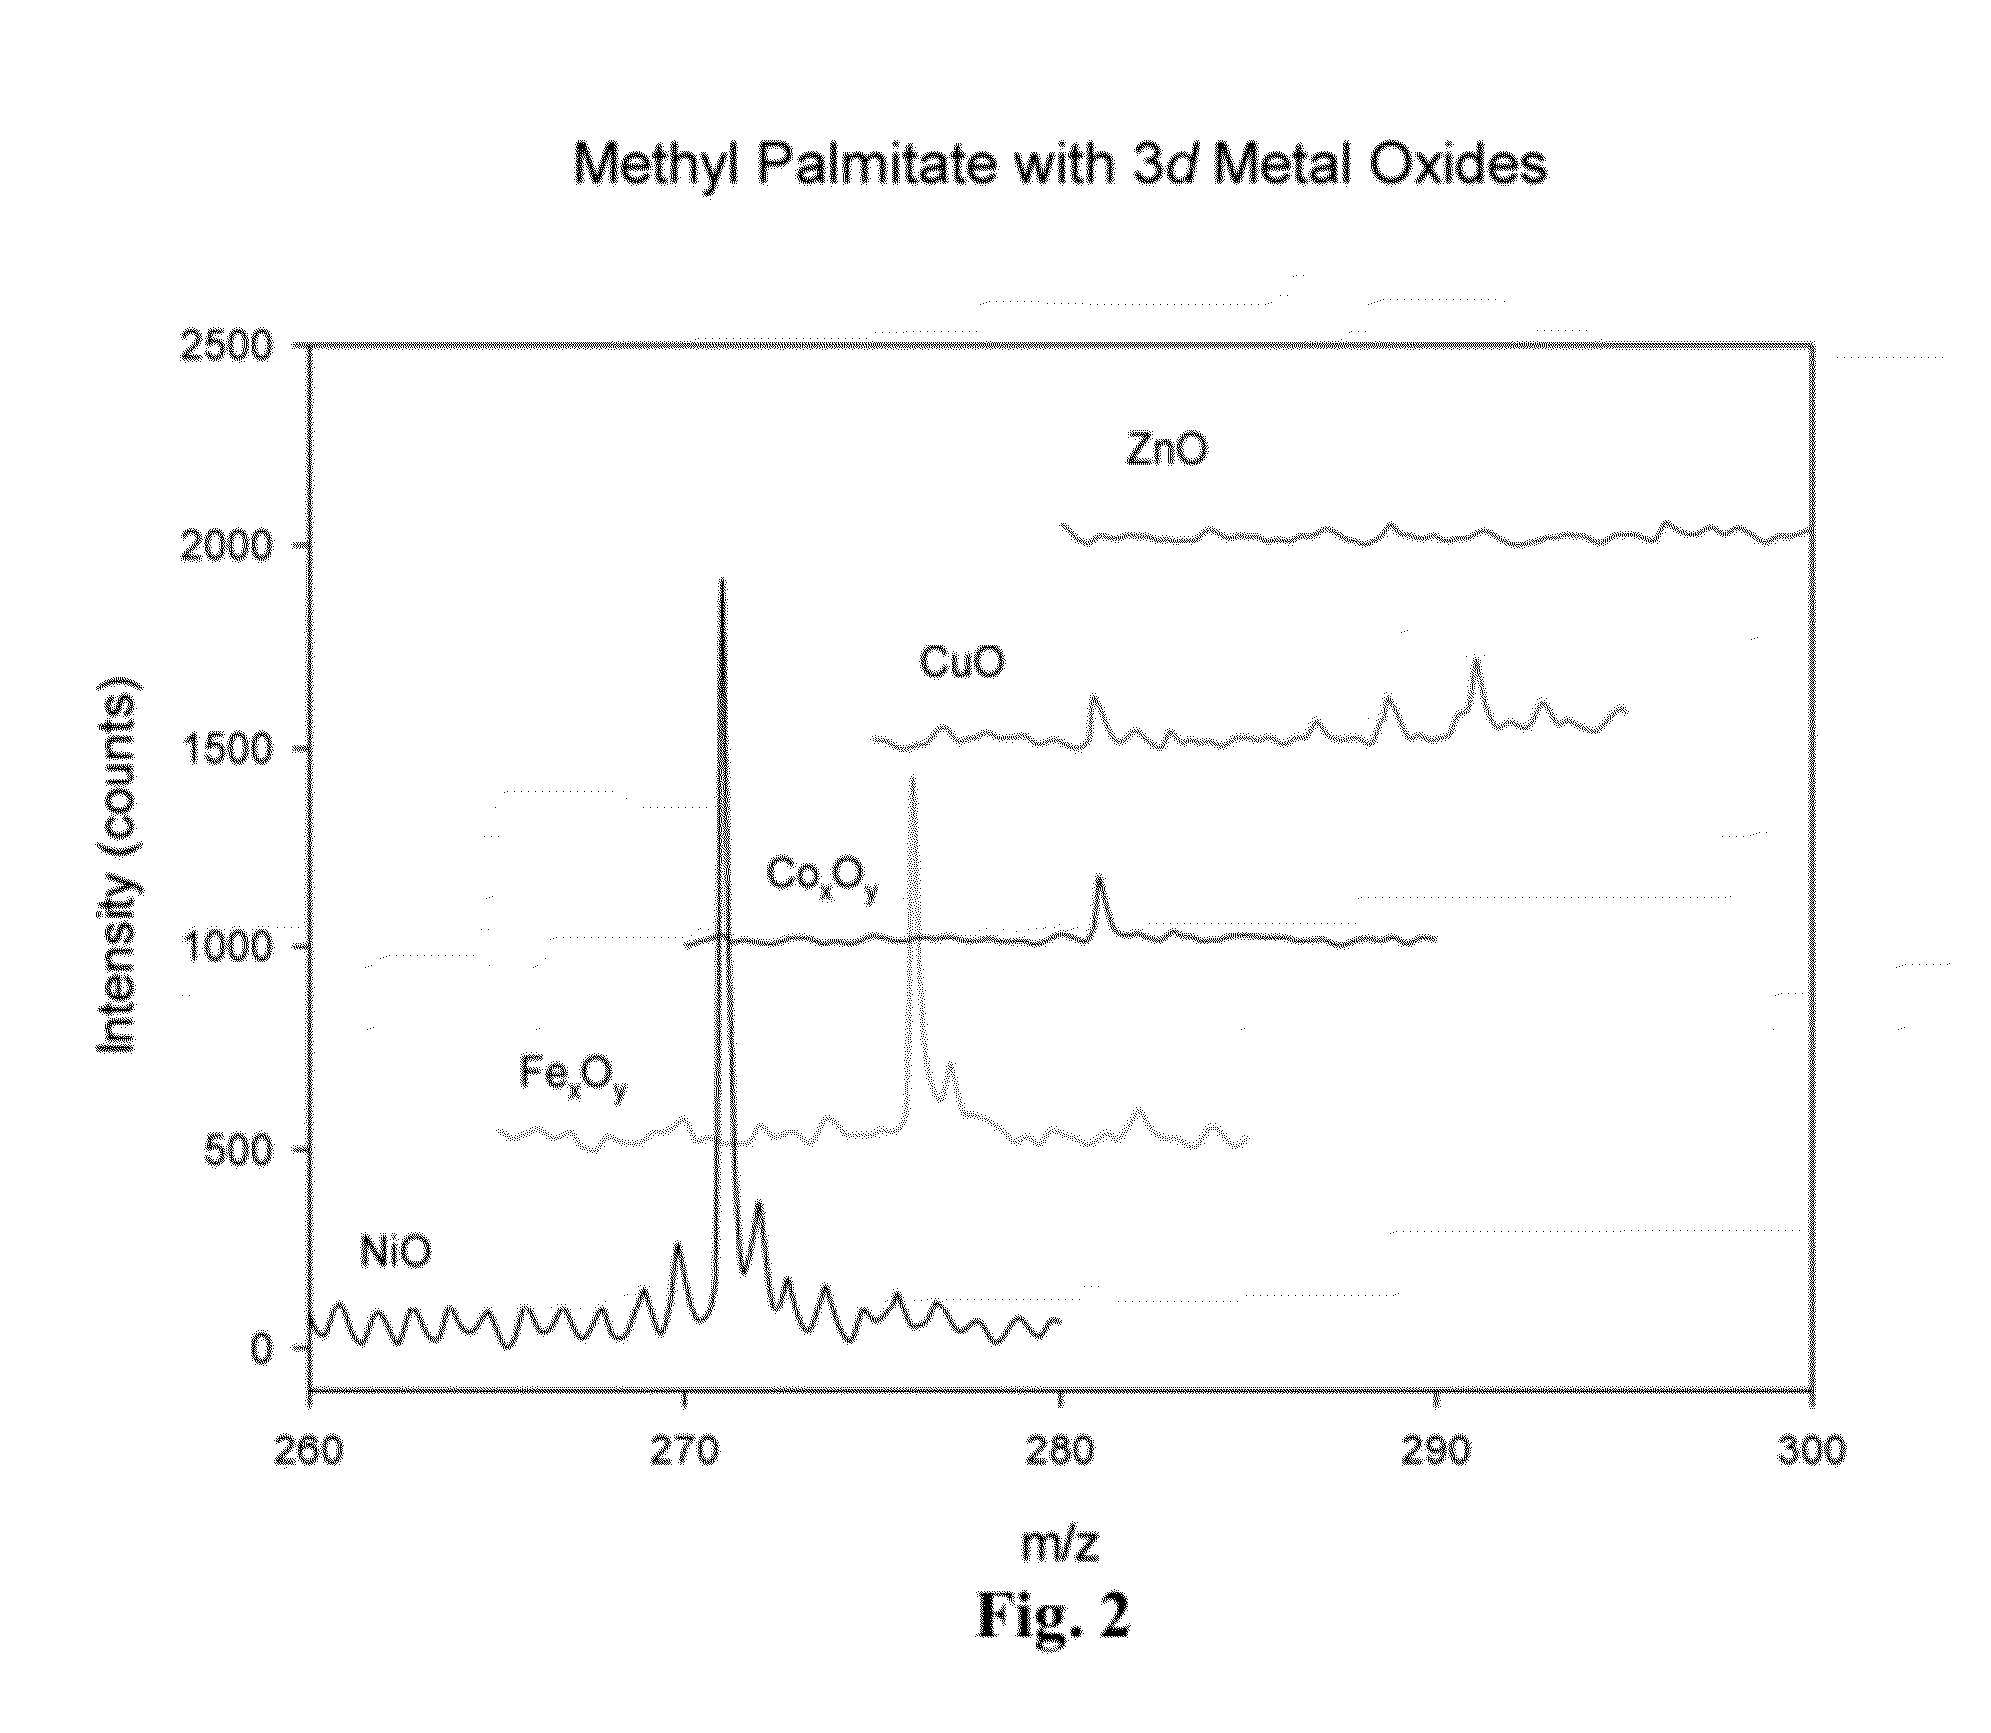 Metal oxide laser ionization-mass spectrometry